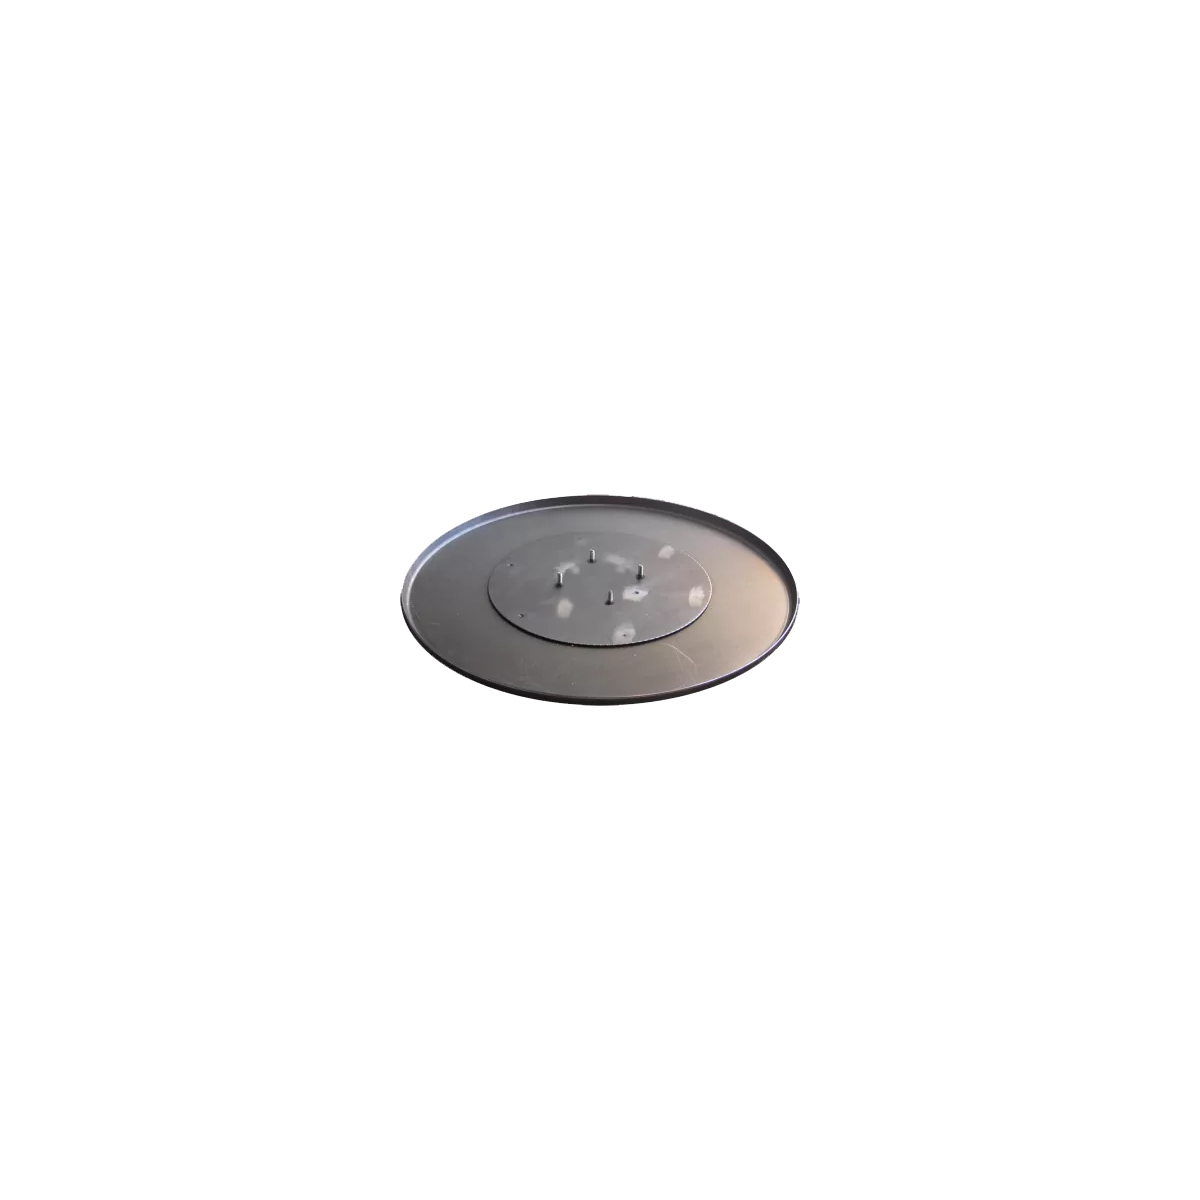 Затирочный диск на шпильках ø 600 мм